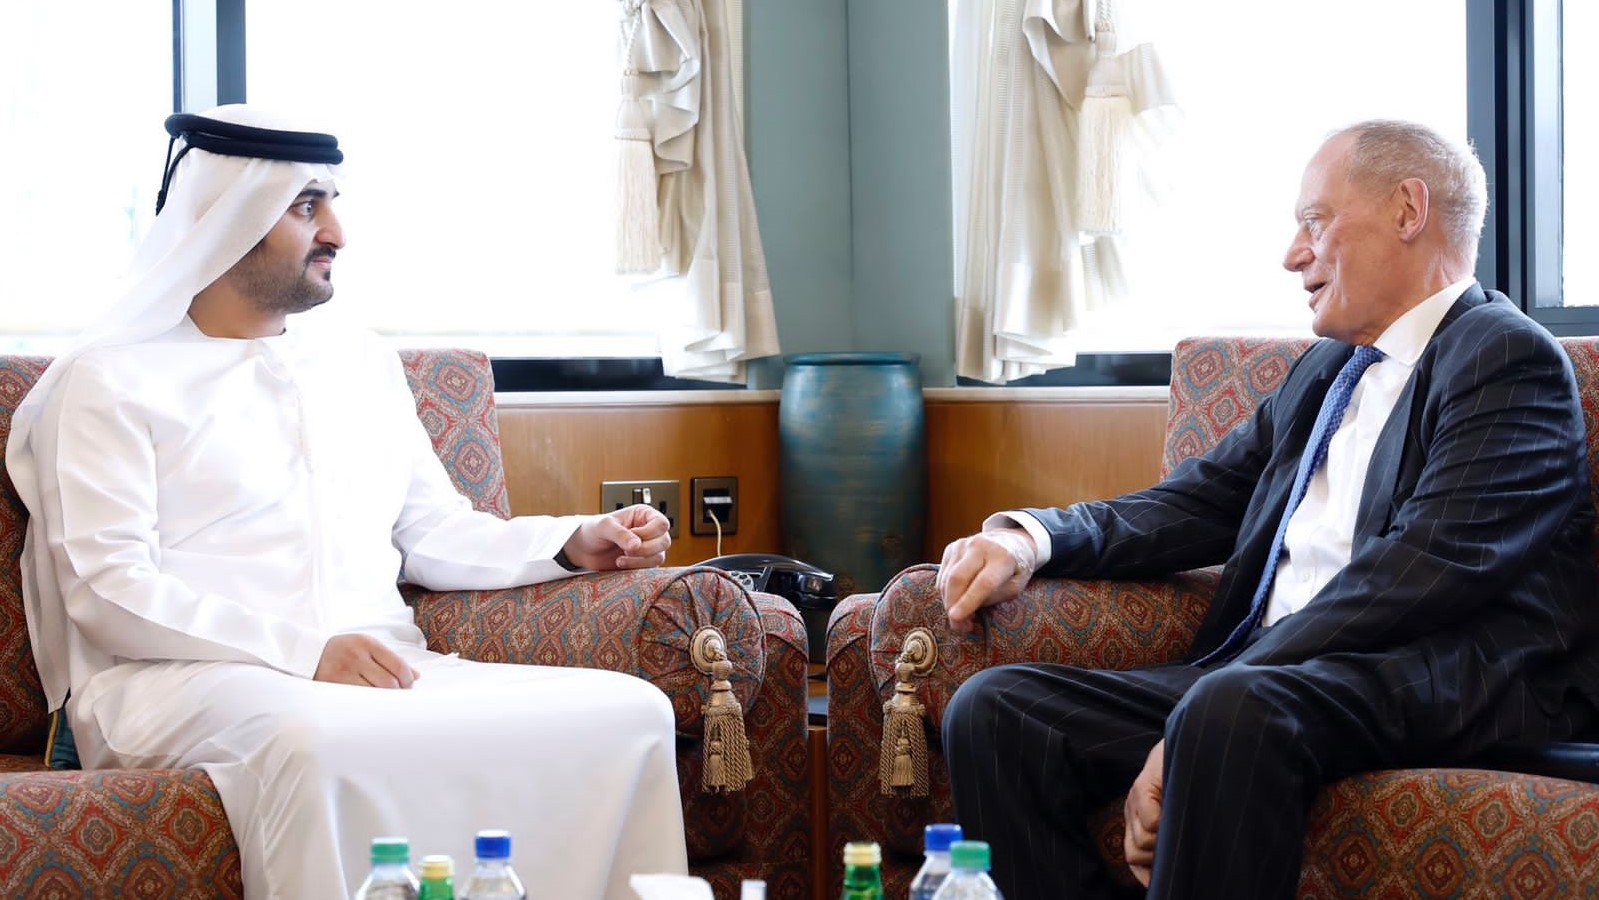 الشيخ مكتوم بن محمد بن راشد آل مكتوم مستقبلاً وزير الدولة البريطاني للاستثمار اللورد جيرالد إدغار غريمستون في دبي الأربعاء 6 يوليو 2022